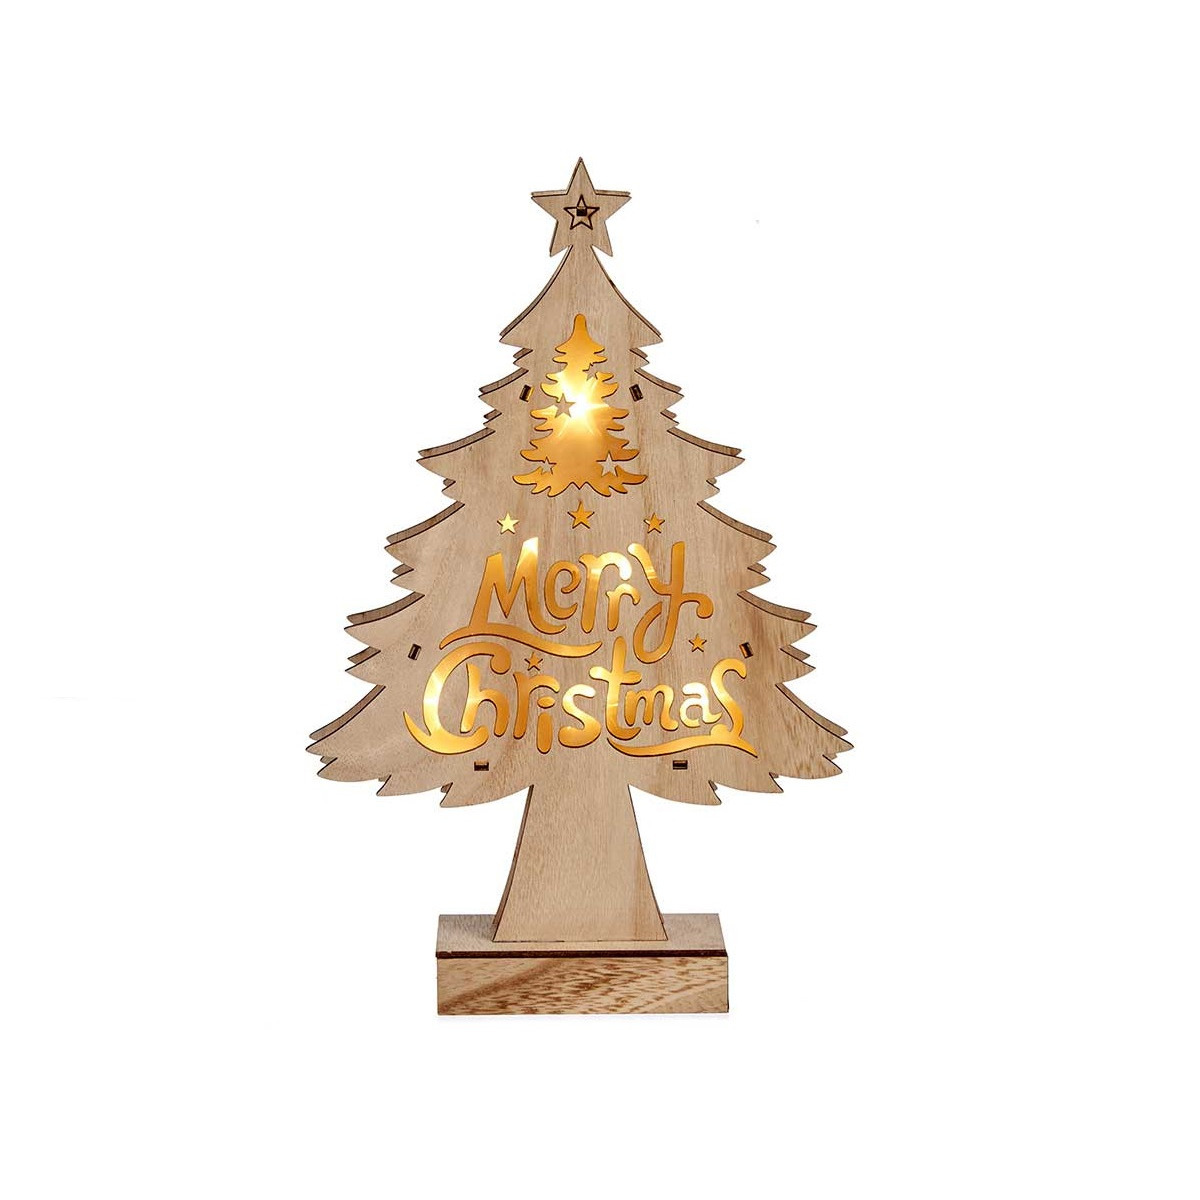 Houten kerstboompje decoratie van 32 cm met LED verlichting Merry Christmas wish